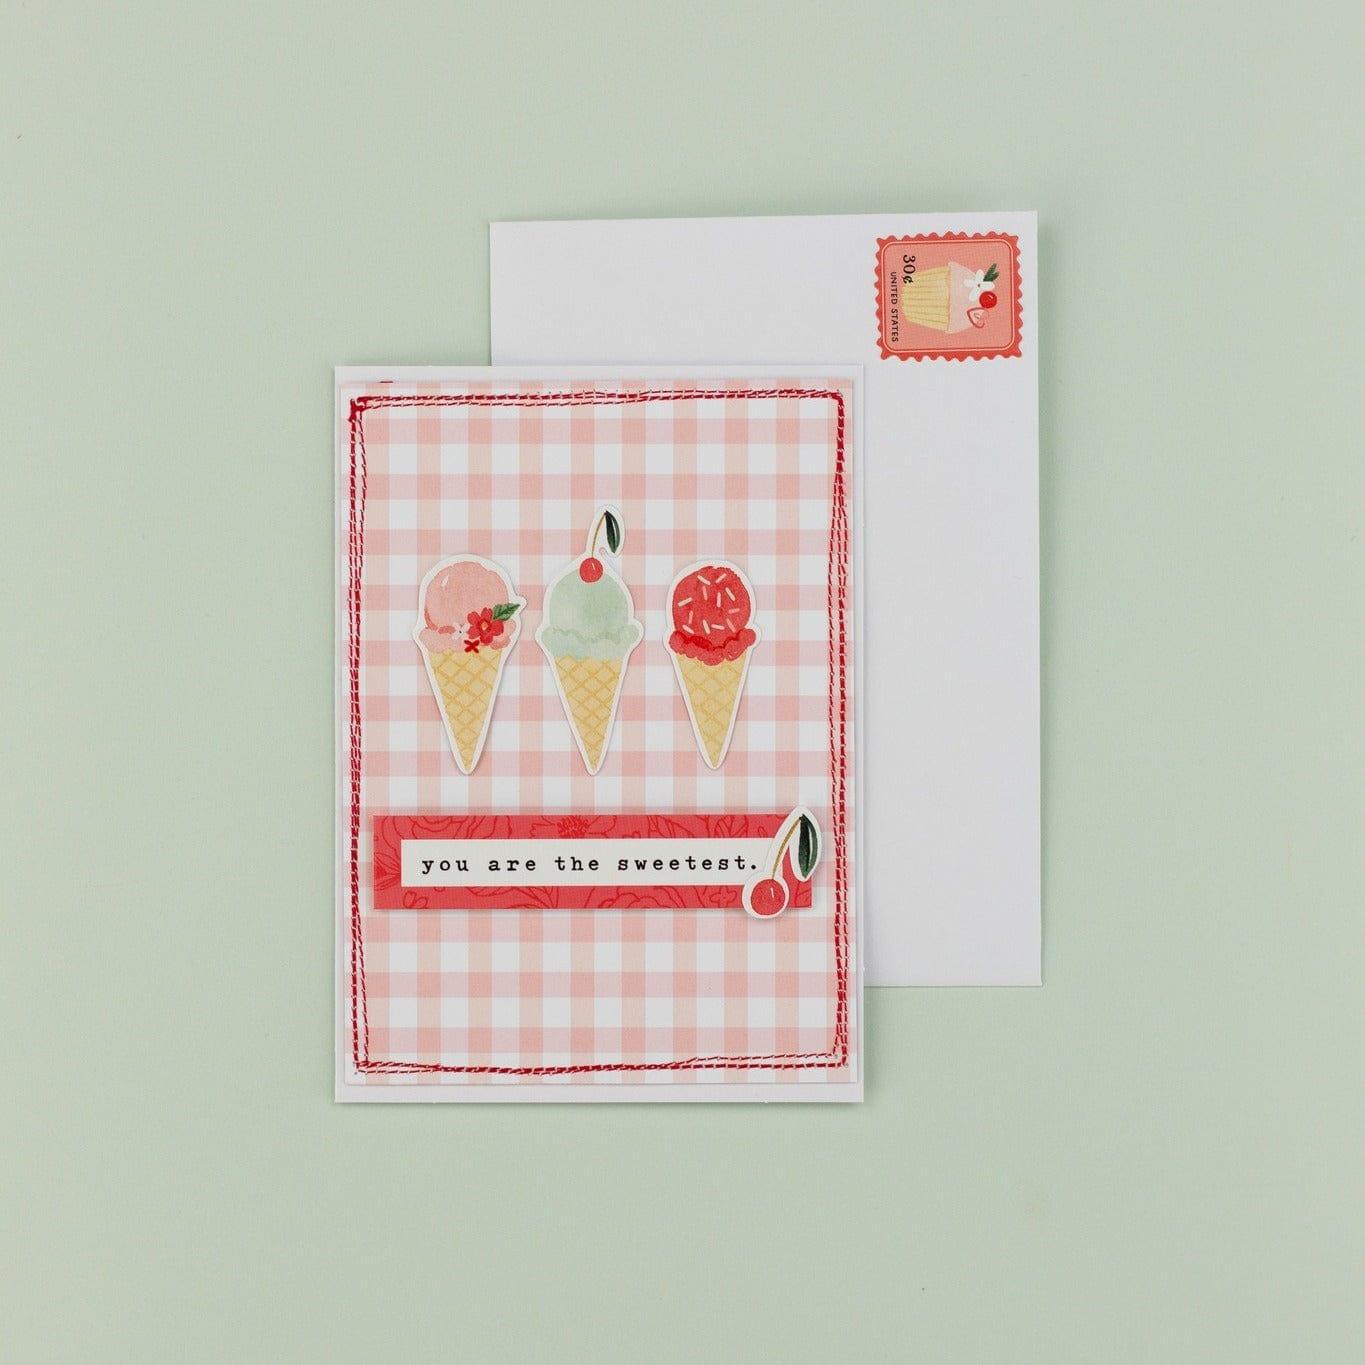 My Valentine Collection 5 x 5 Scrapbook Ephemera Die Cuts by Carta Bella - Scrapbook Supply Companies